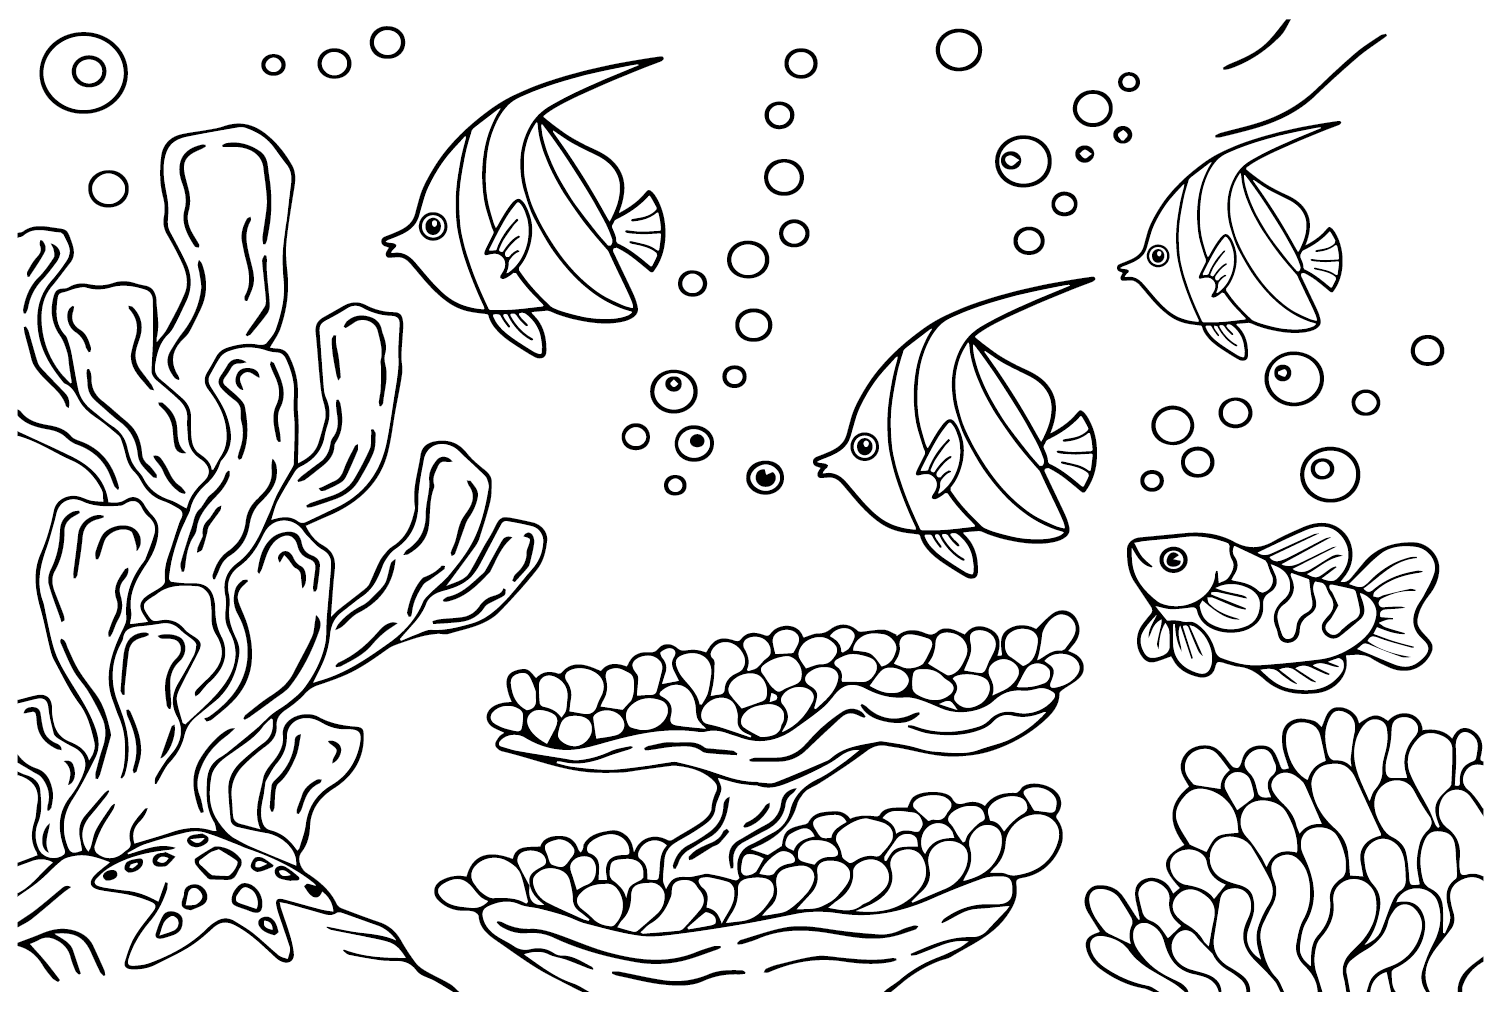 Pennant Coralfish zum Ausdrucken von Pennant Coralfish